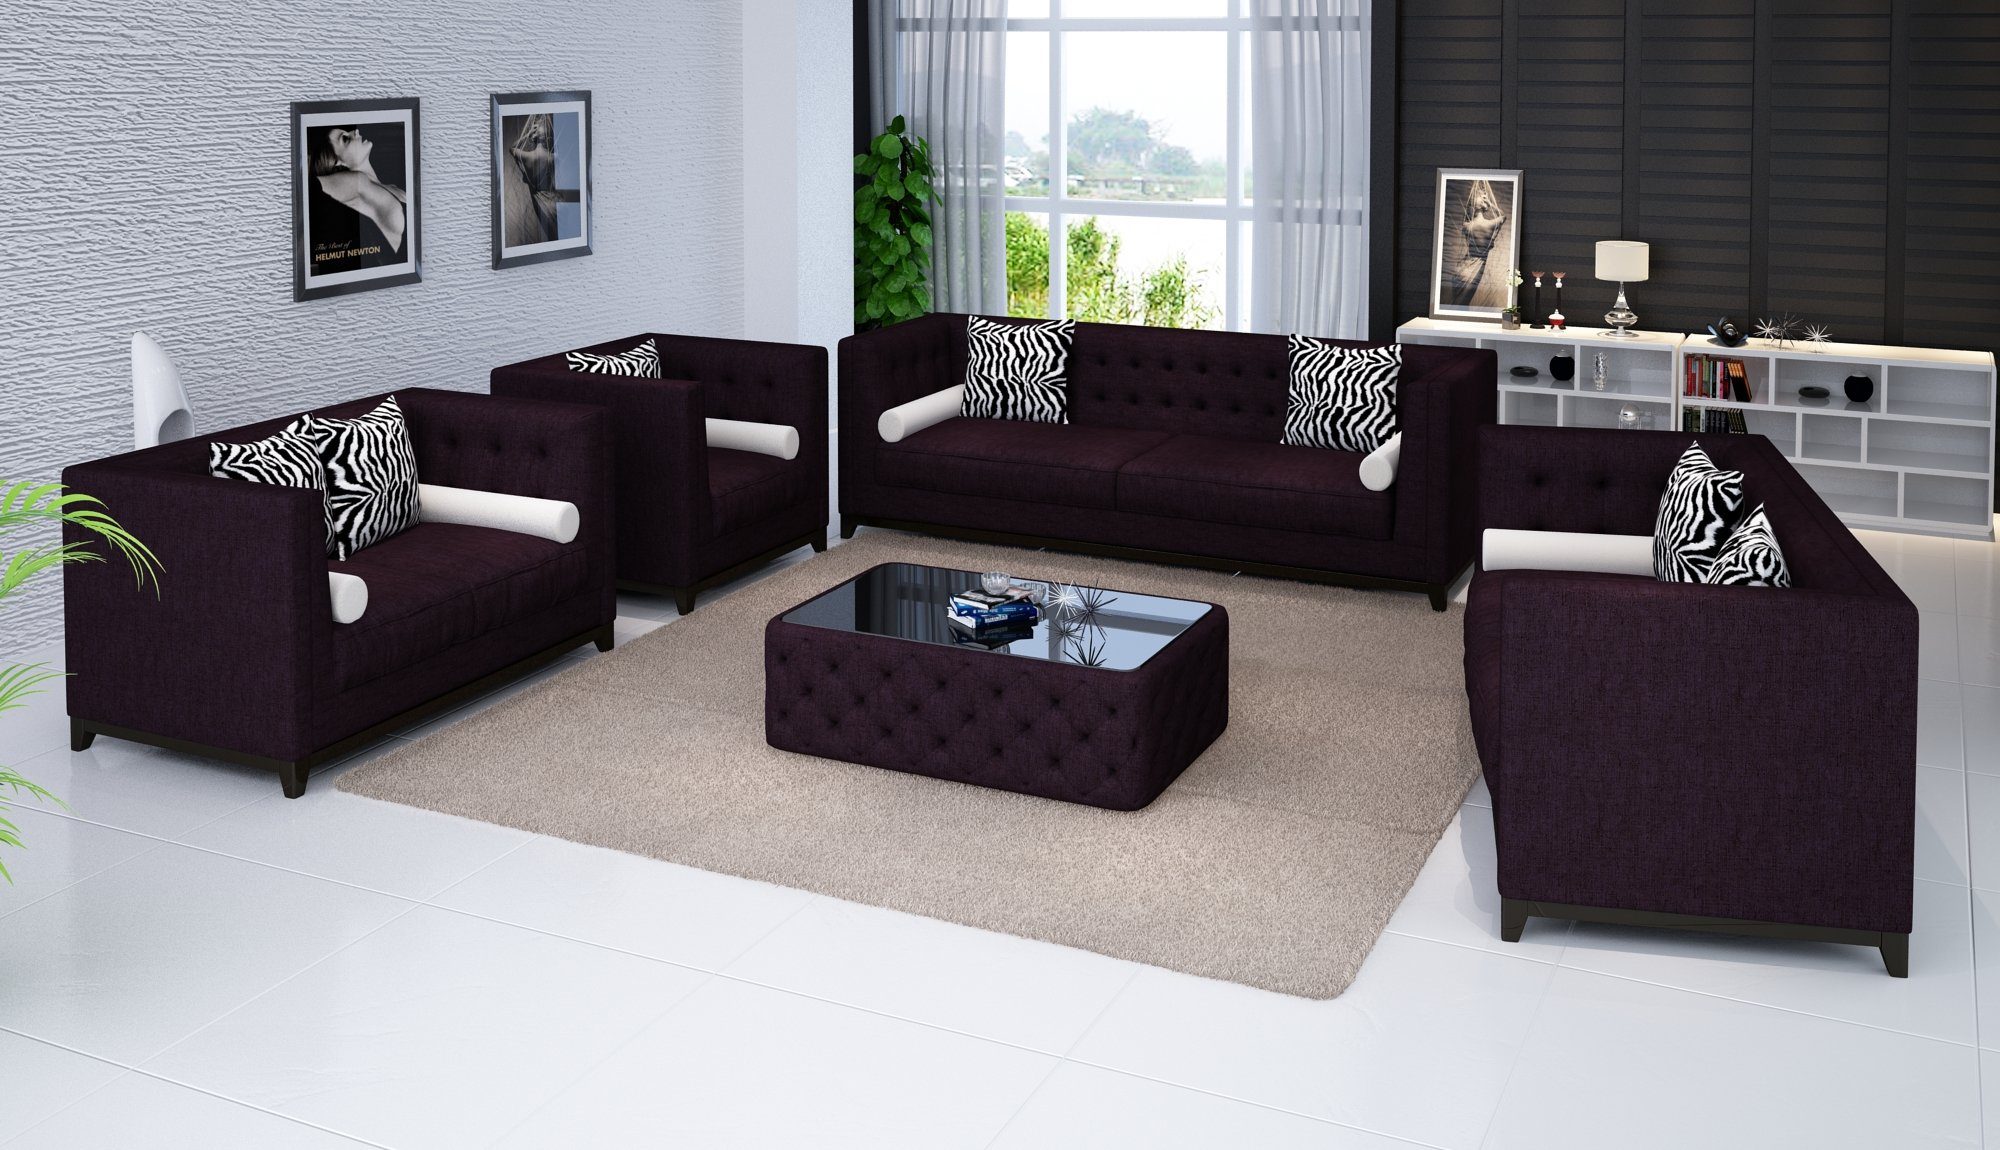 JVmoebel Sofa Sofagarnitur Set Design Sofas Polster Couchen Leder 3 2 Sitzer, Made in Europe Lila | Alle Sofas